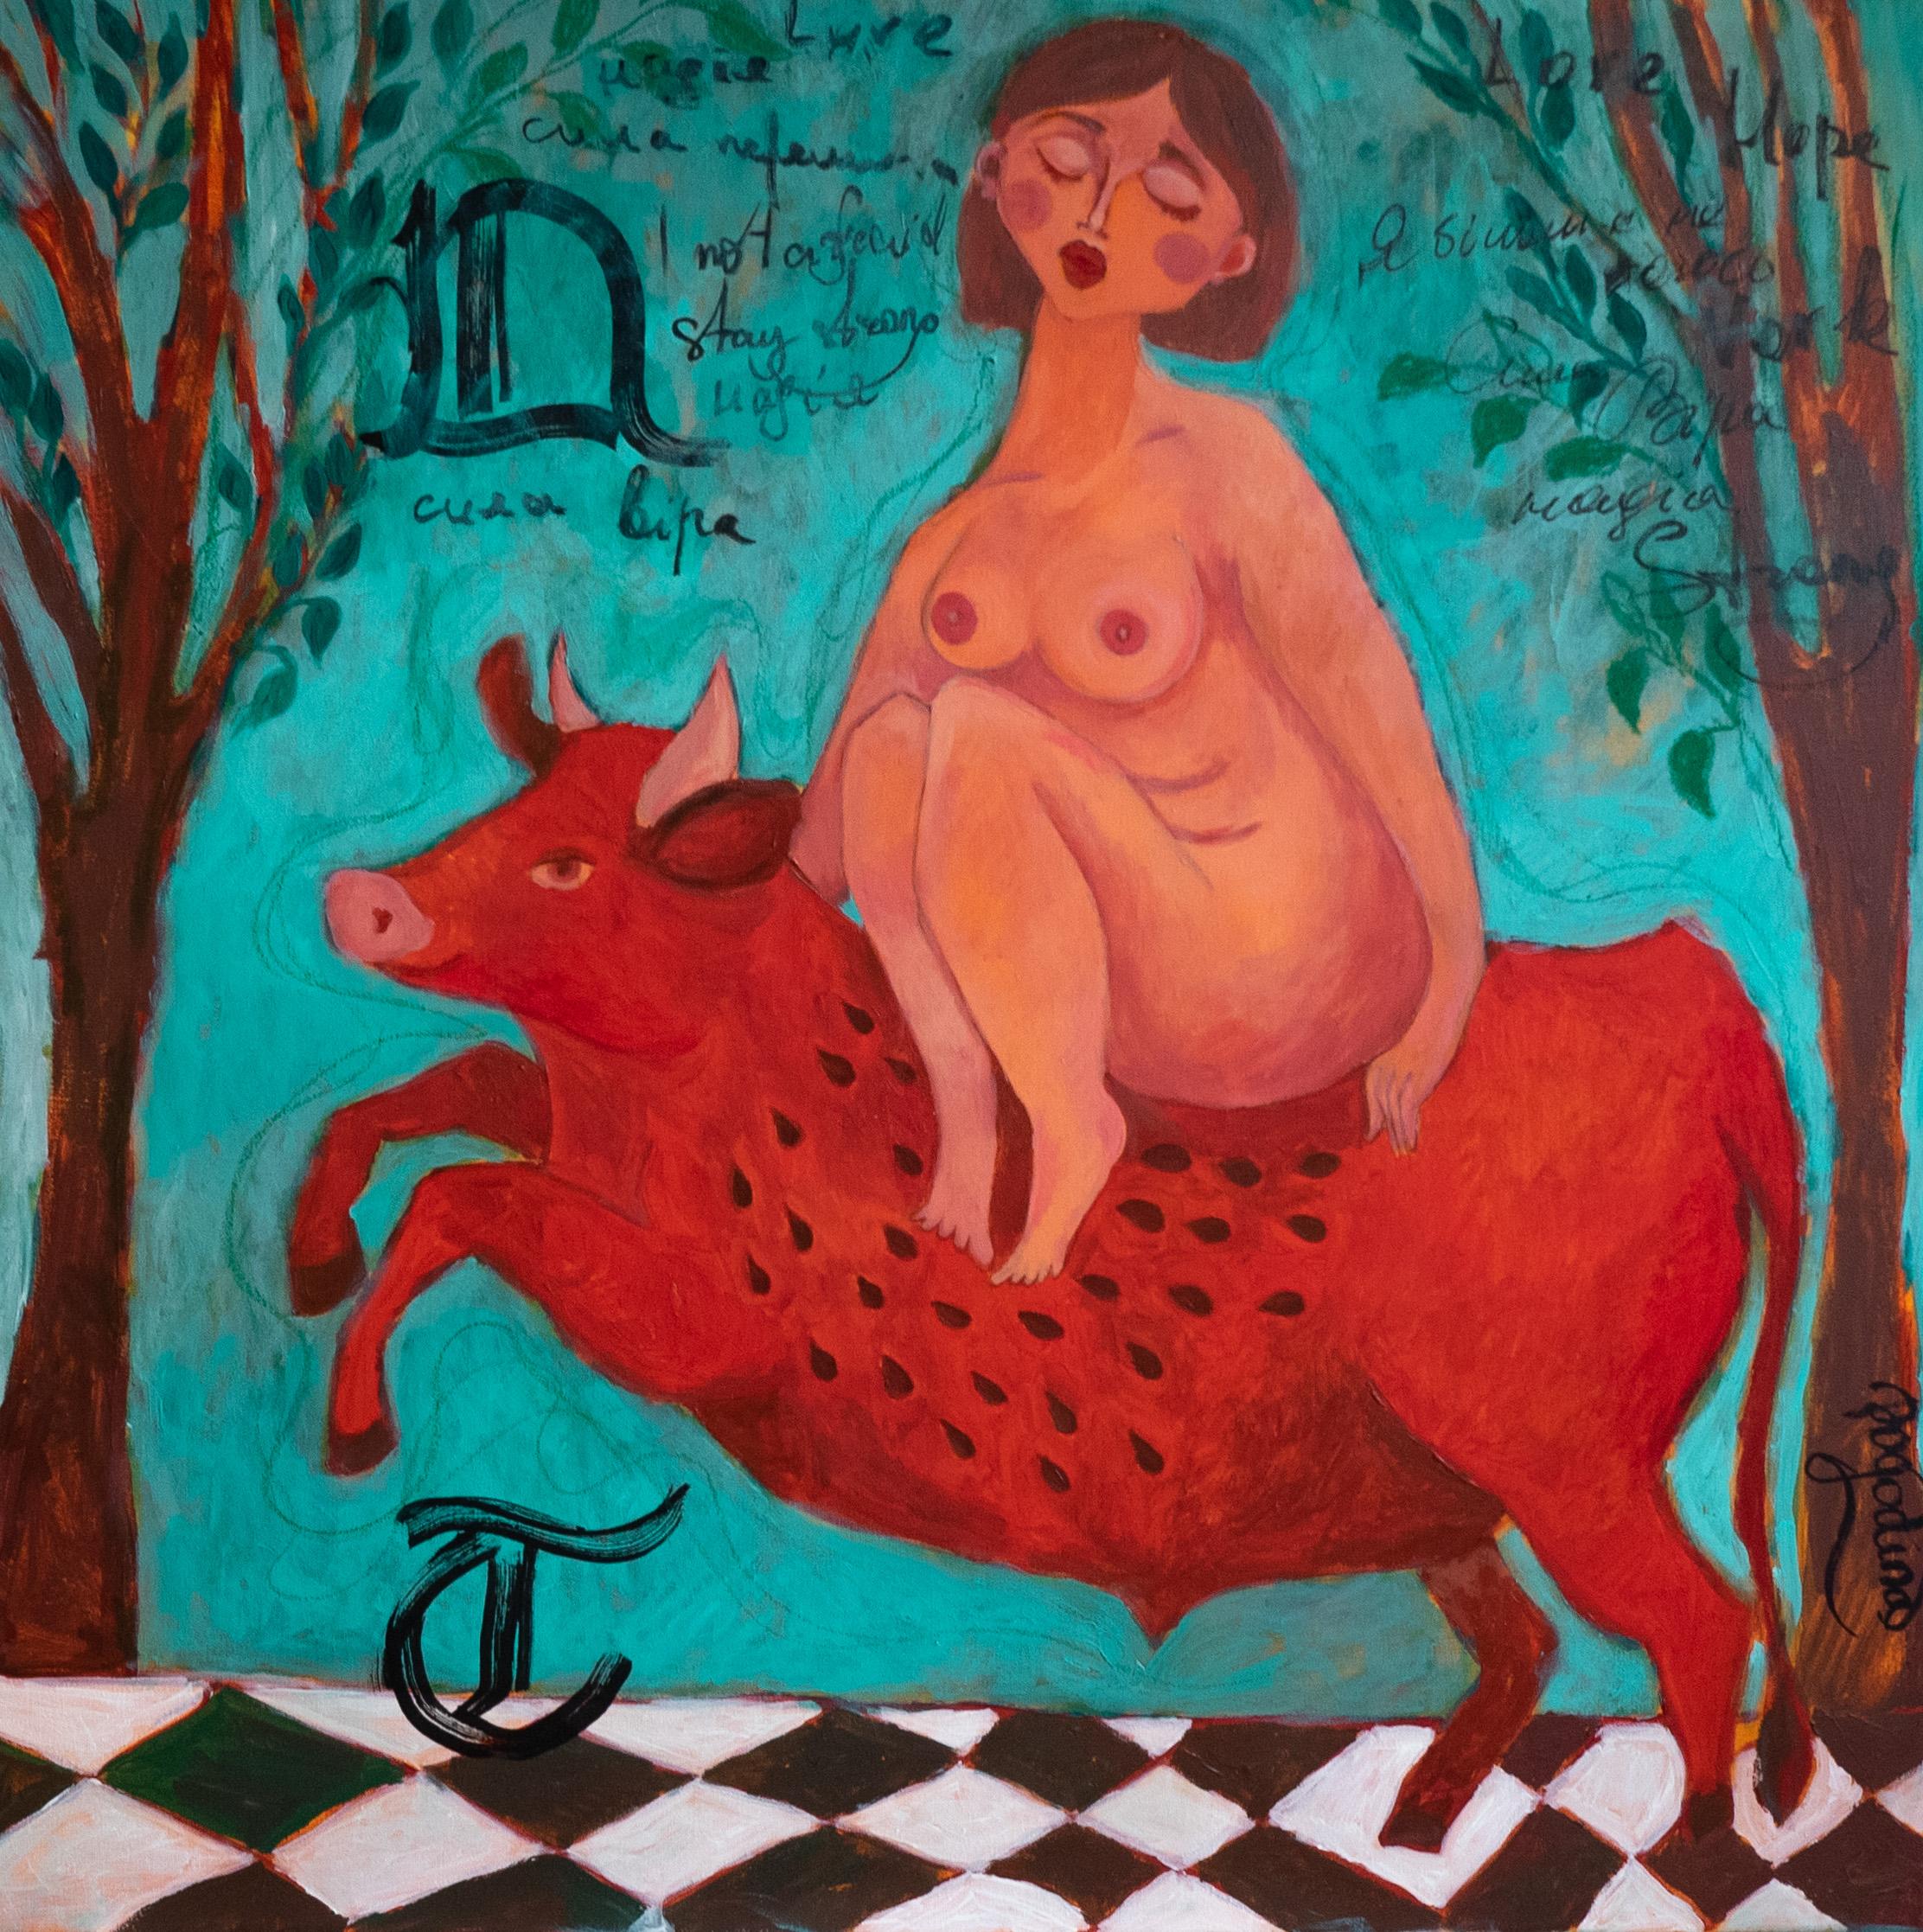 Dasha Pogodina Nude Painting - Towards the Real me